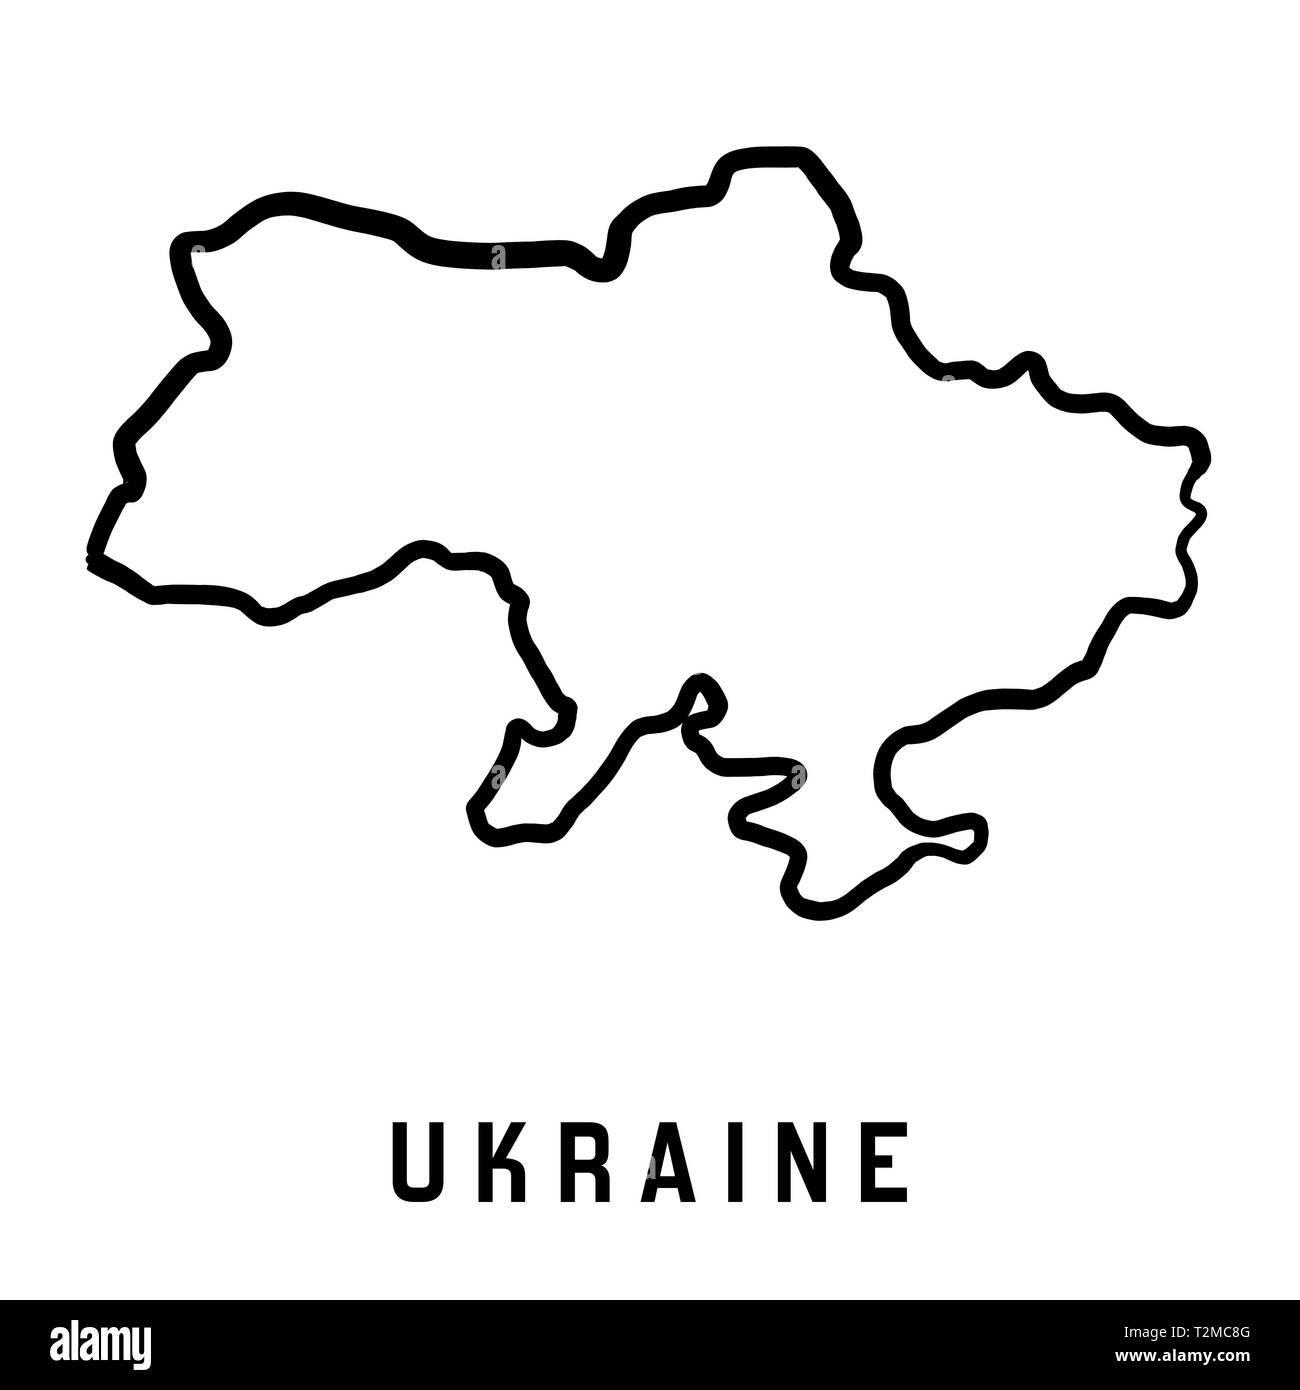 L'Ucraina mappa delineare - paese liscio mappa forma vettoriale ...